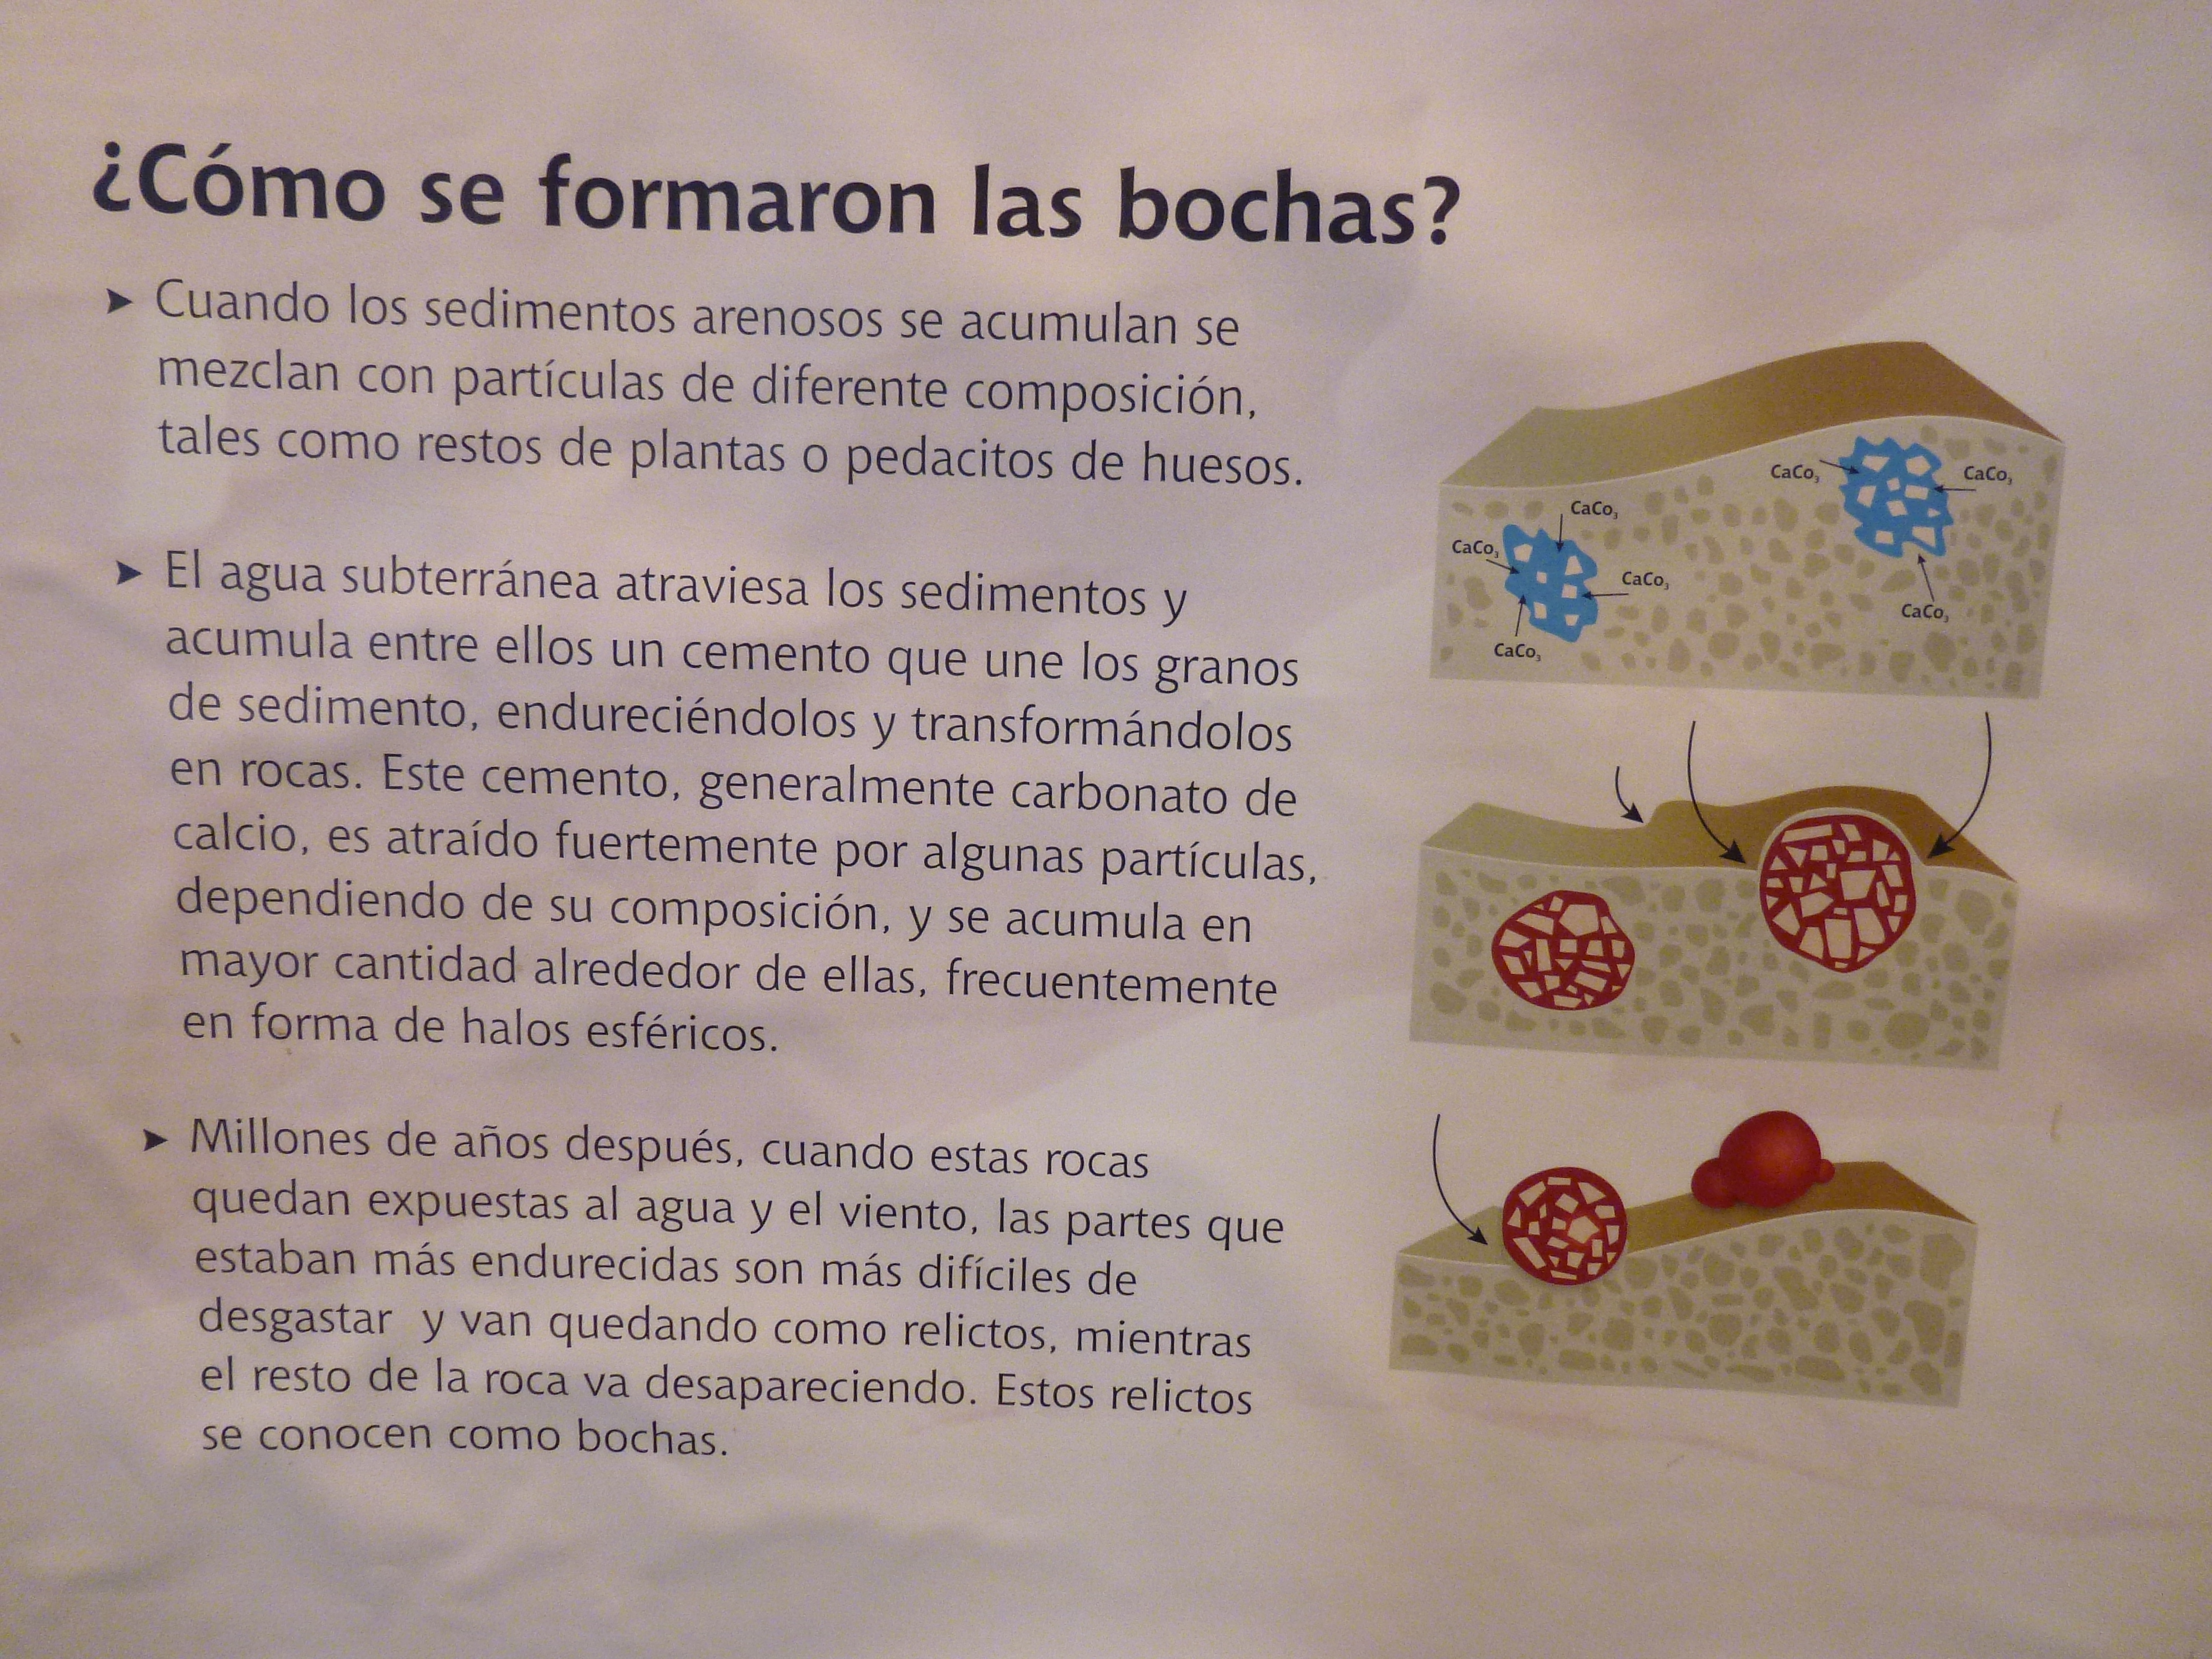 ischigualasto-cancha-bochas-formacic3b3n.jpg